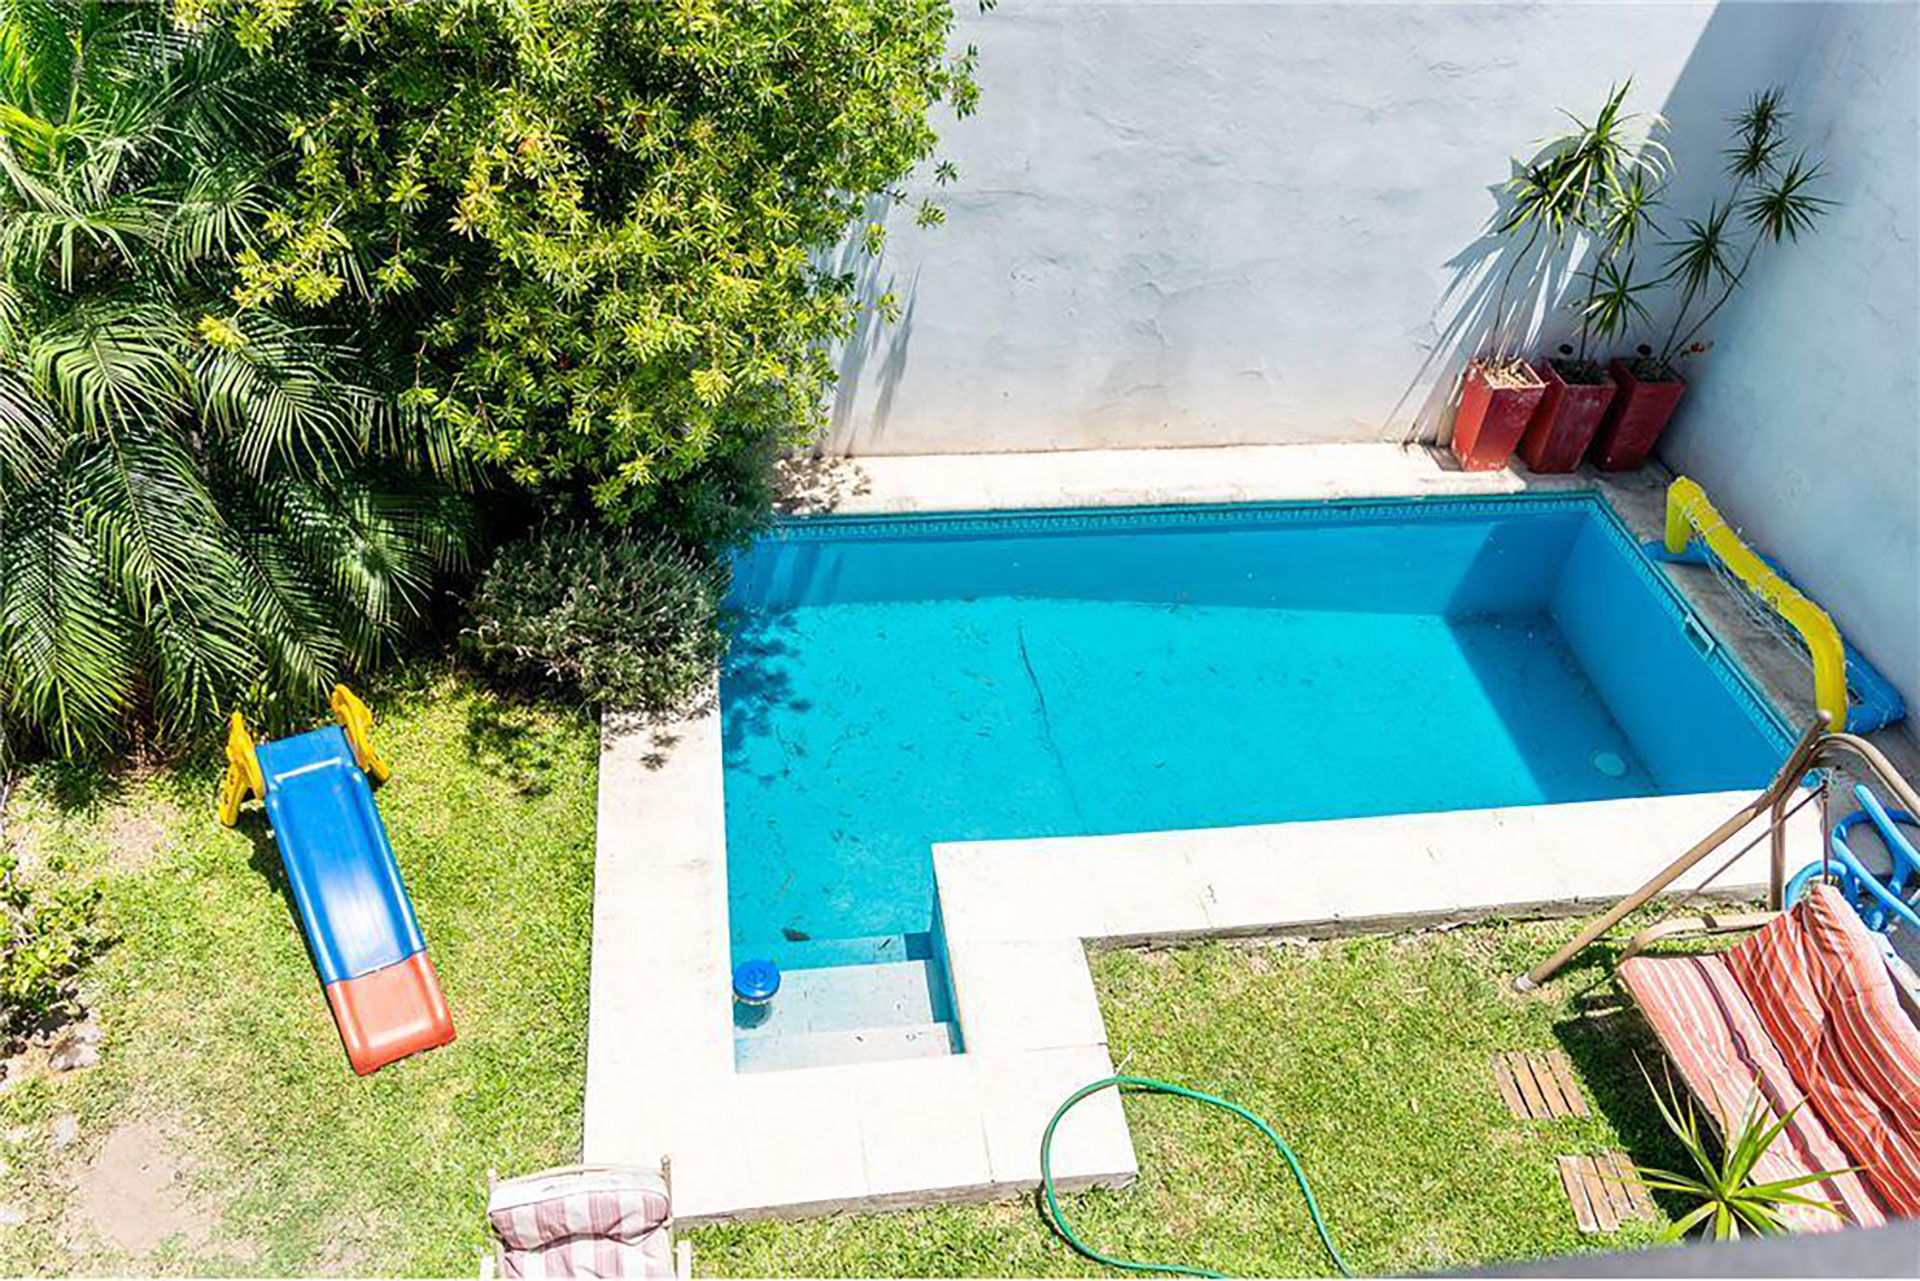 En las casas de 200 m2 de promedio no puede faltar la piscina, el lugar más buscado para el verano